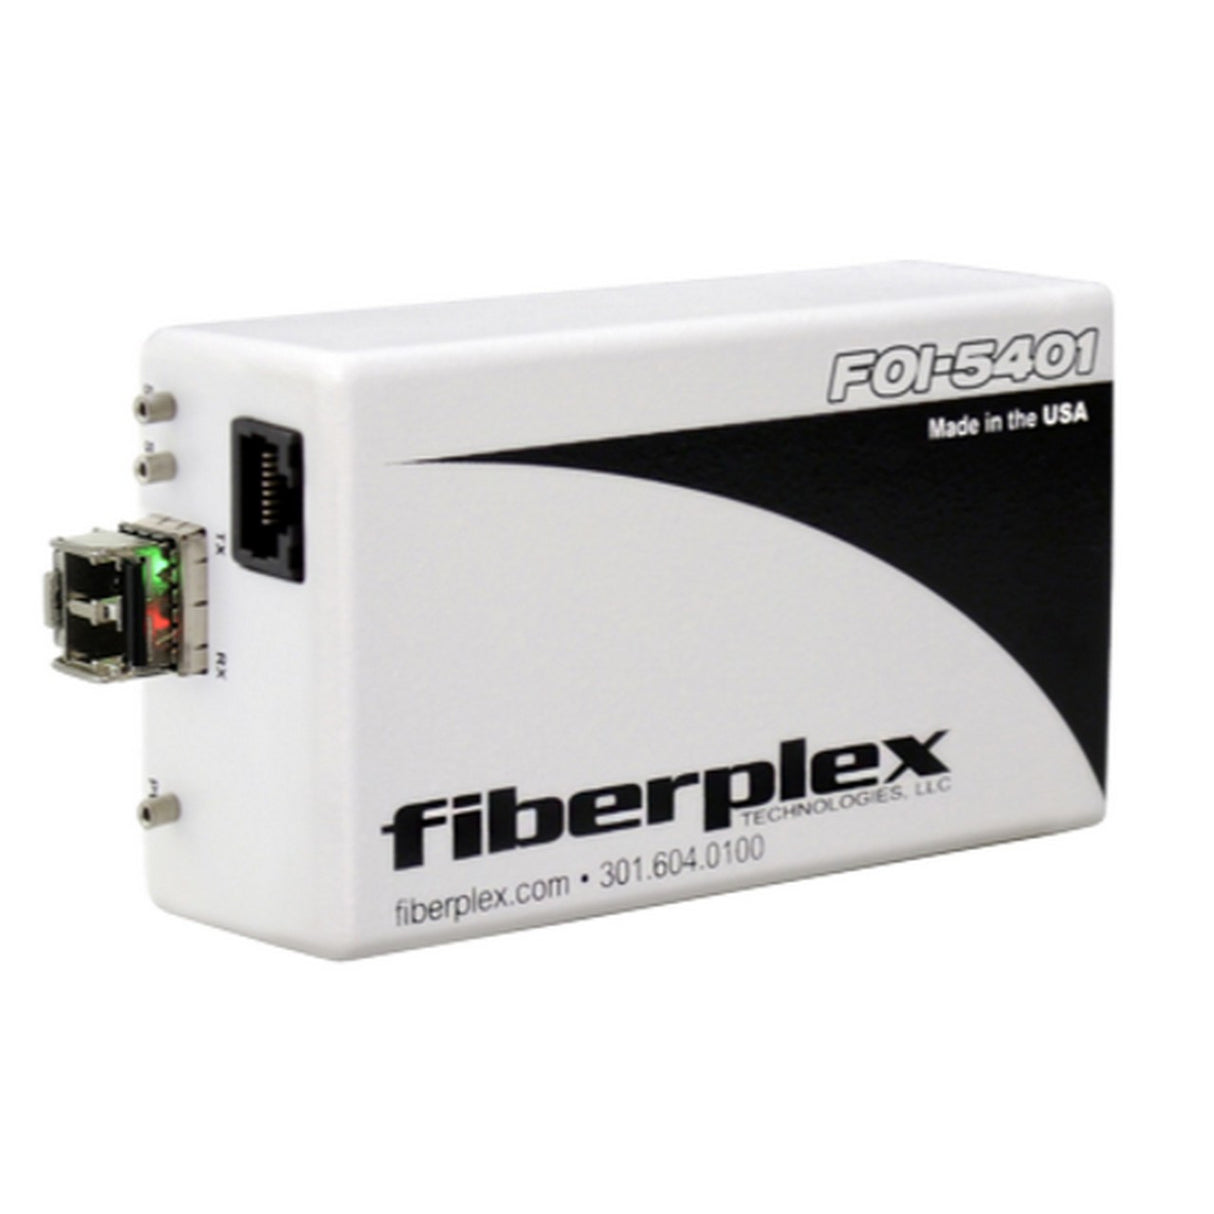 fiberplex FOI-5401-T22 | Isolator for T1 DS-1 or ISDN PRI Interface